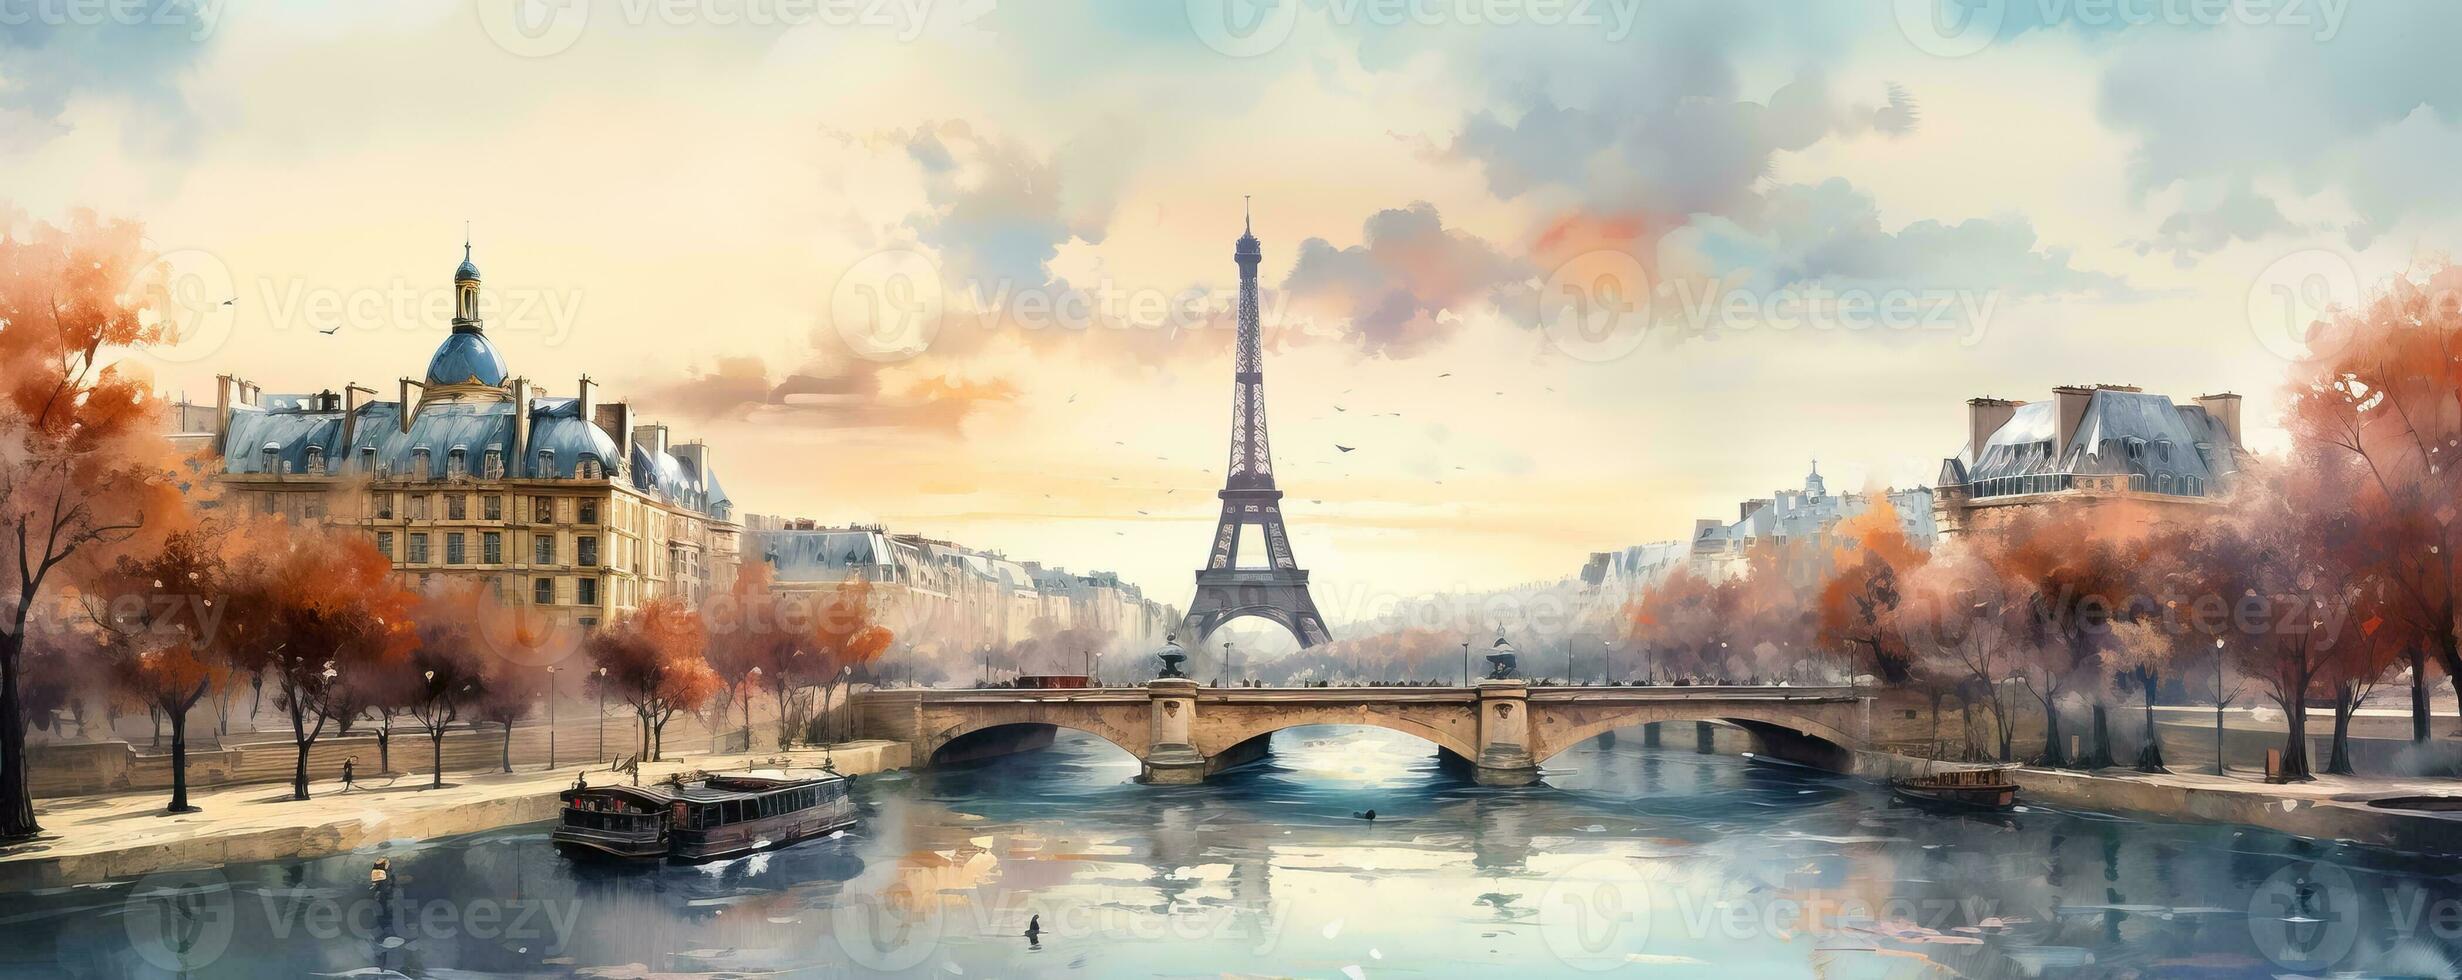 een pittoreske winter waterverf horizon van Parijs met de eiffel toren en Seine rivier- tegen een zacht helling backdrop foto